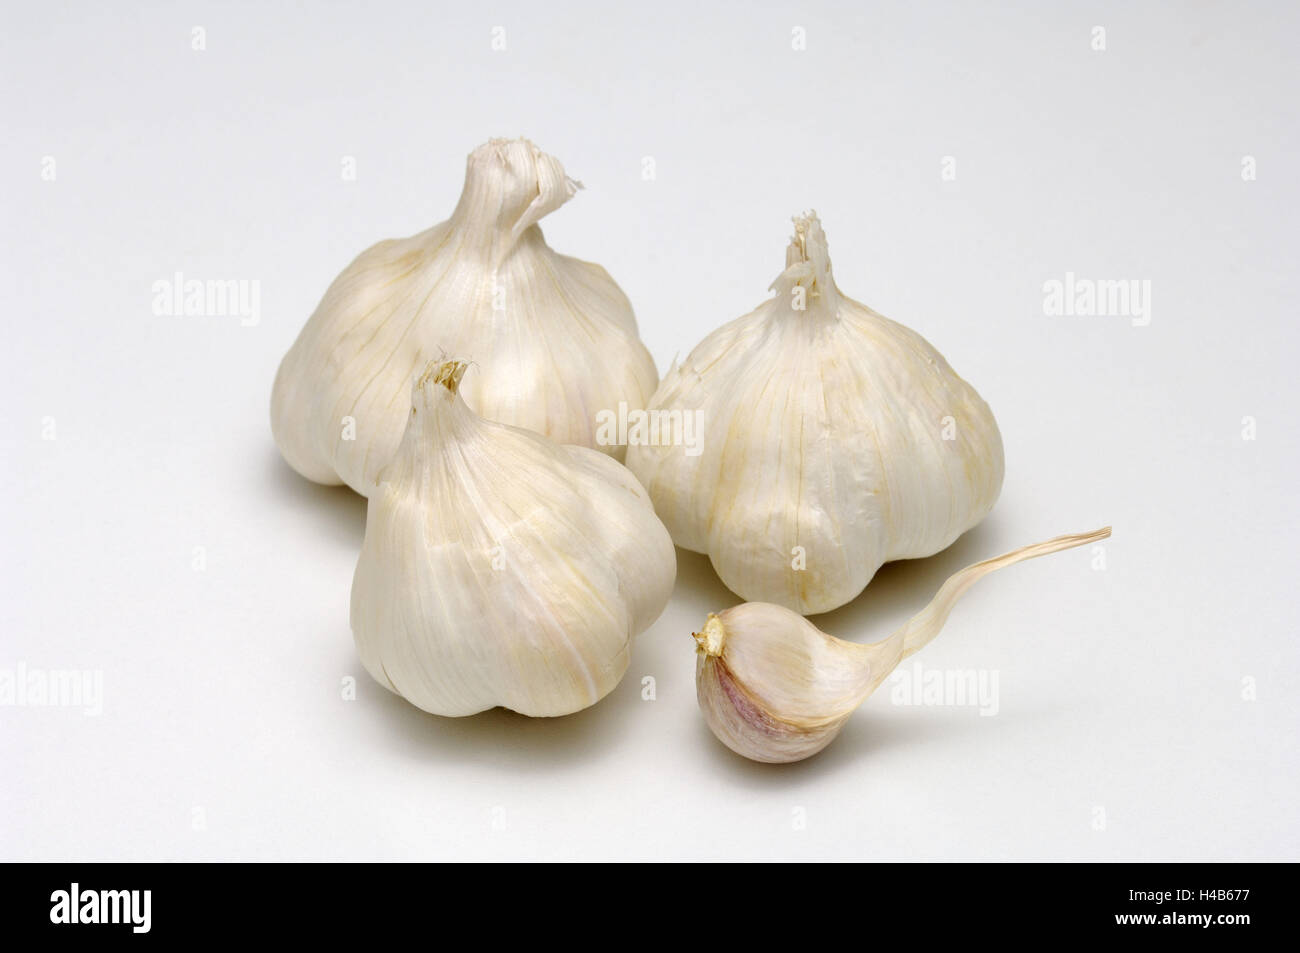 Garlic, Allium sativum, Stock Photo